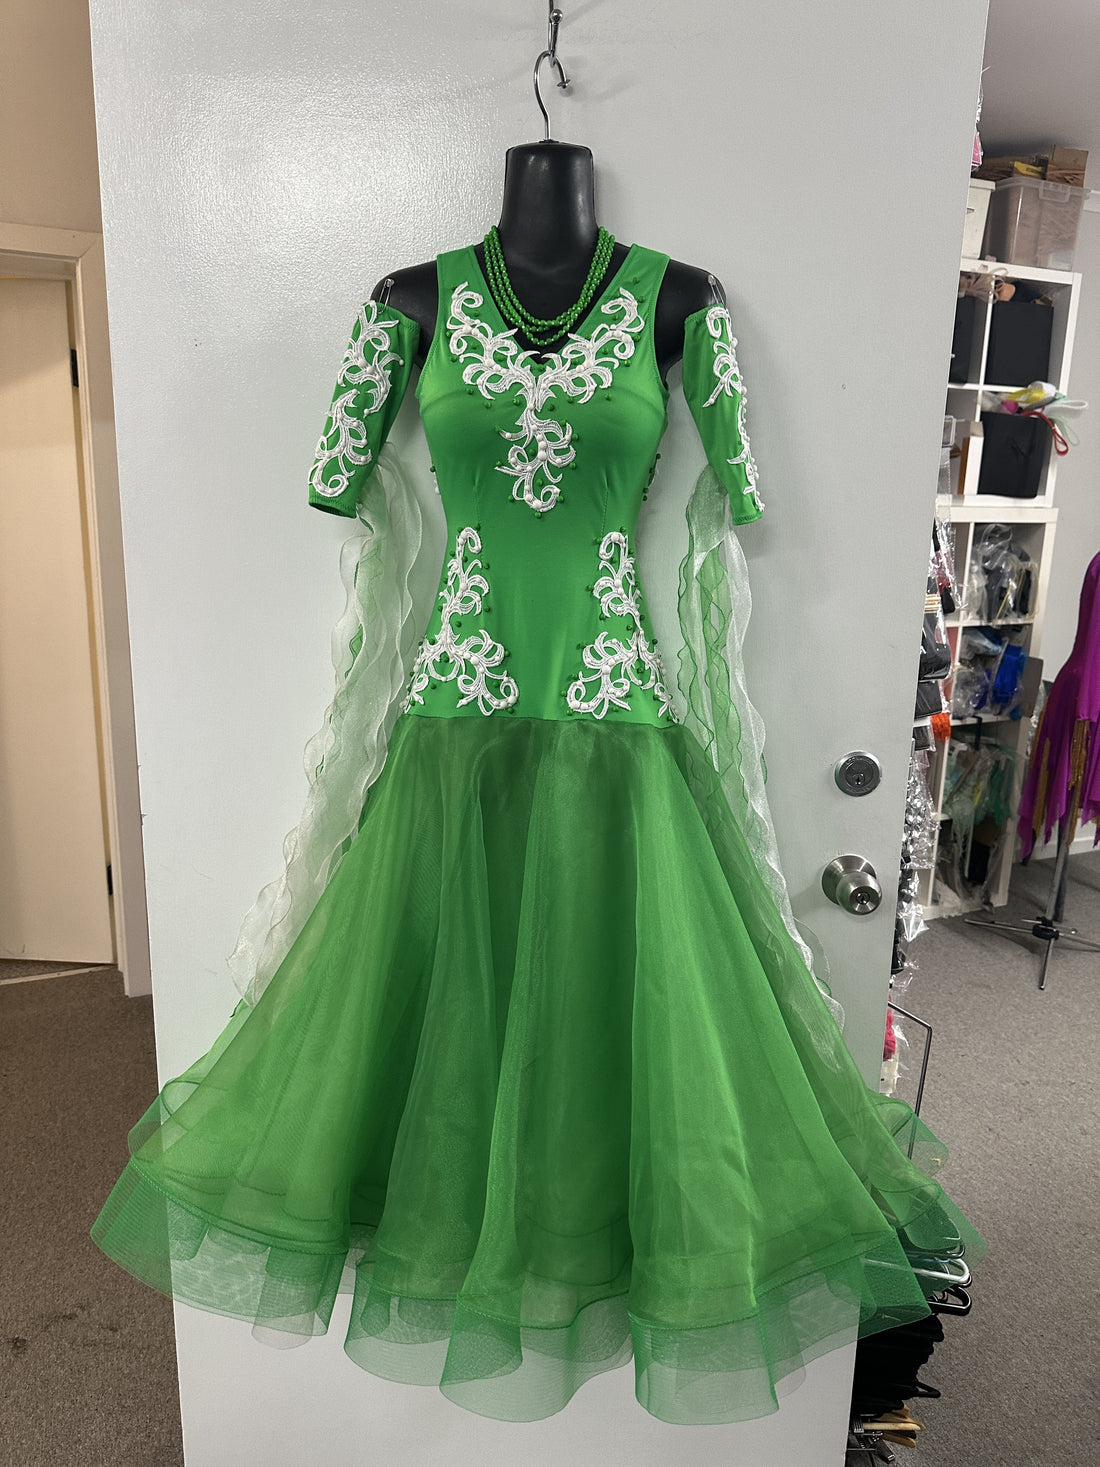 Pre Loved Green & White Ballroom Dress (Size 4-6)